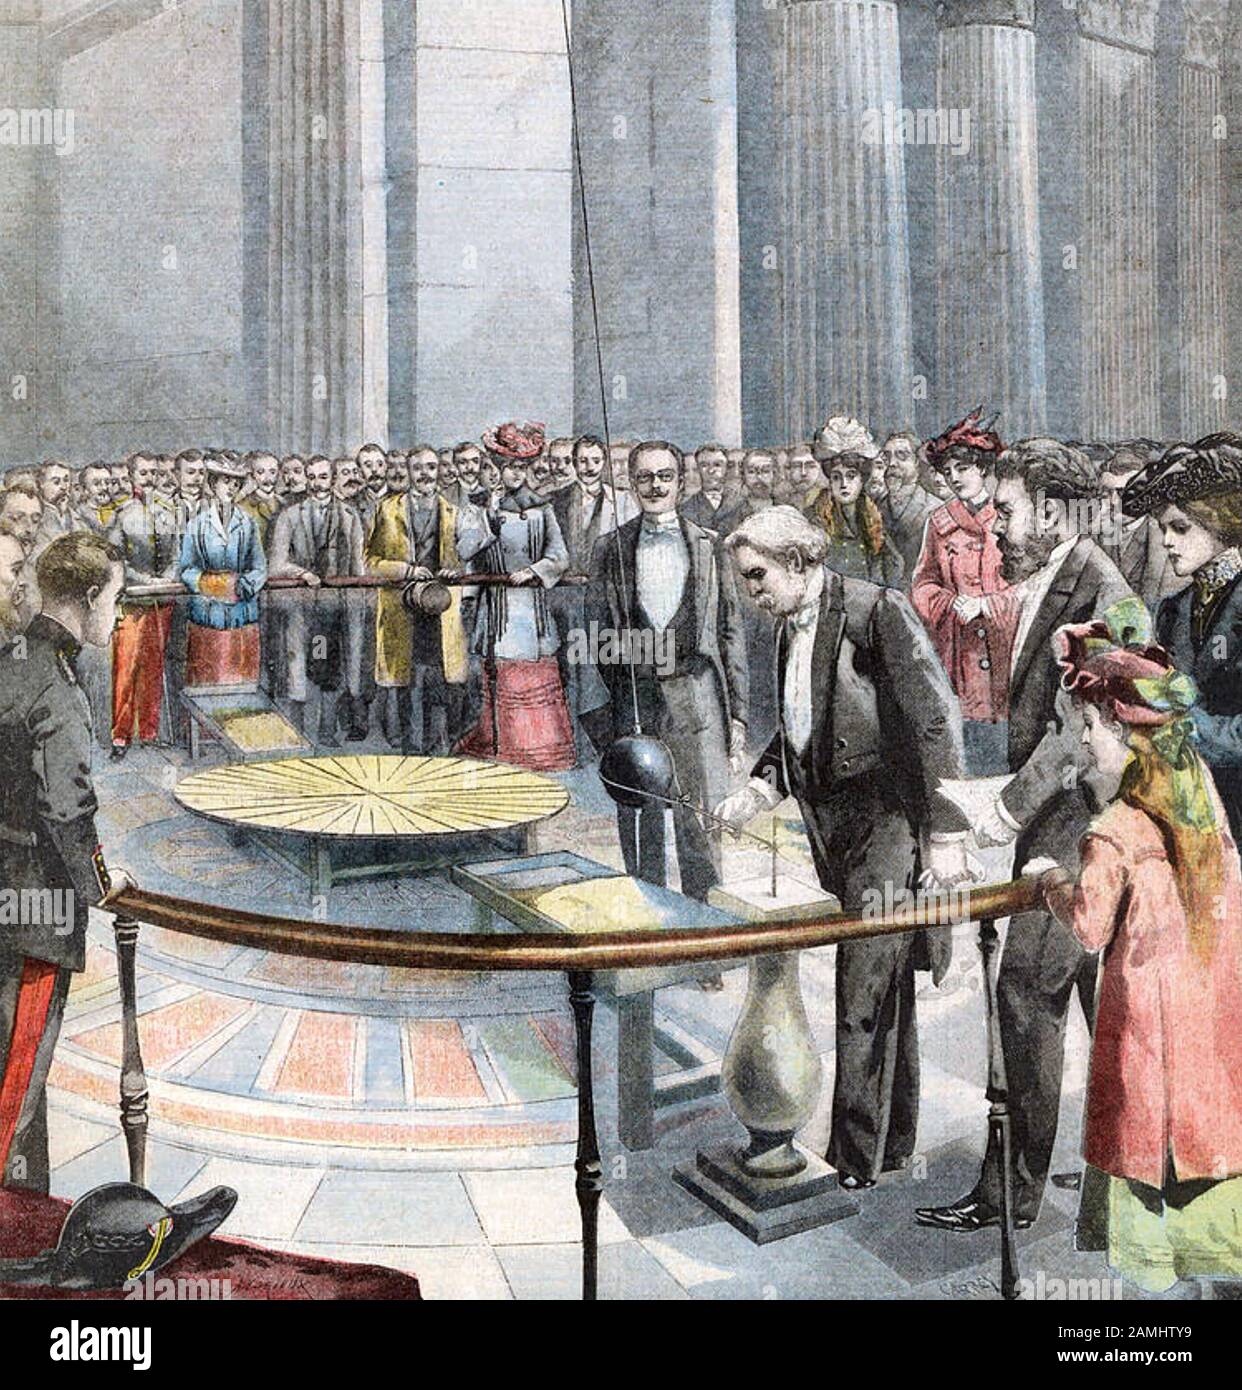 Léon FOUCAULT (1819-1868) französischer Physiker. Sein Experiment, das die Rotation der Erde demonstriert, wiederholt sich anlässlich seines 50-jährigen Bestehens im Panthéon in Paris. Stockfoto